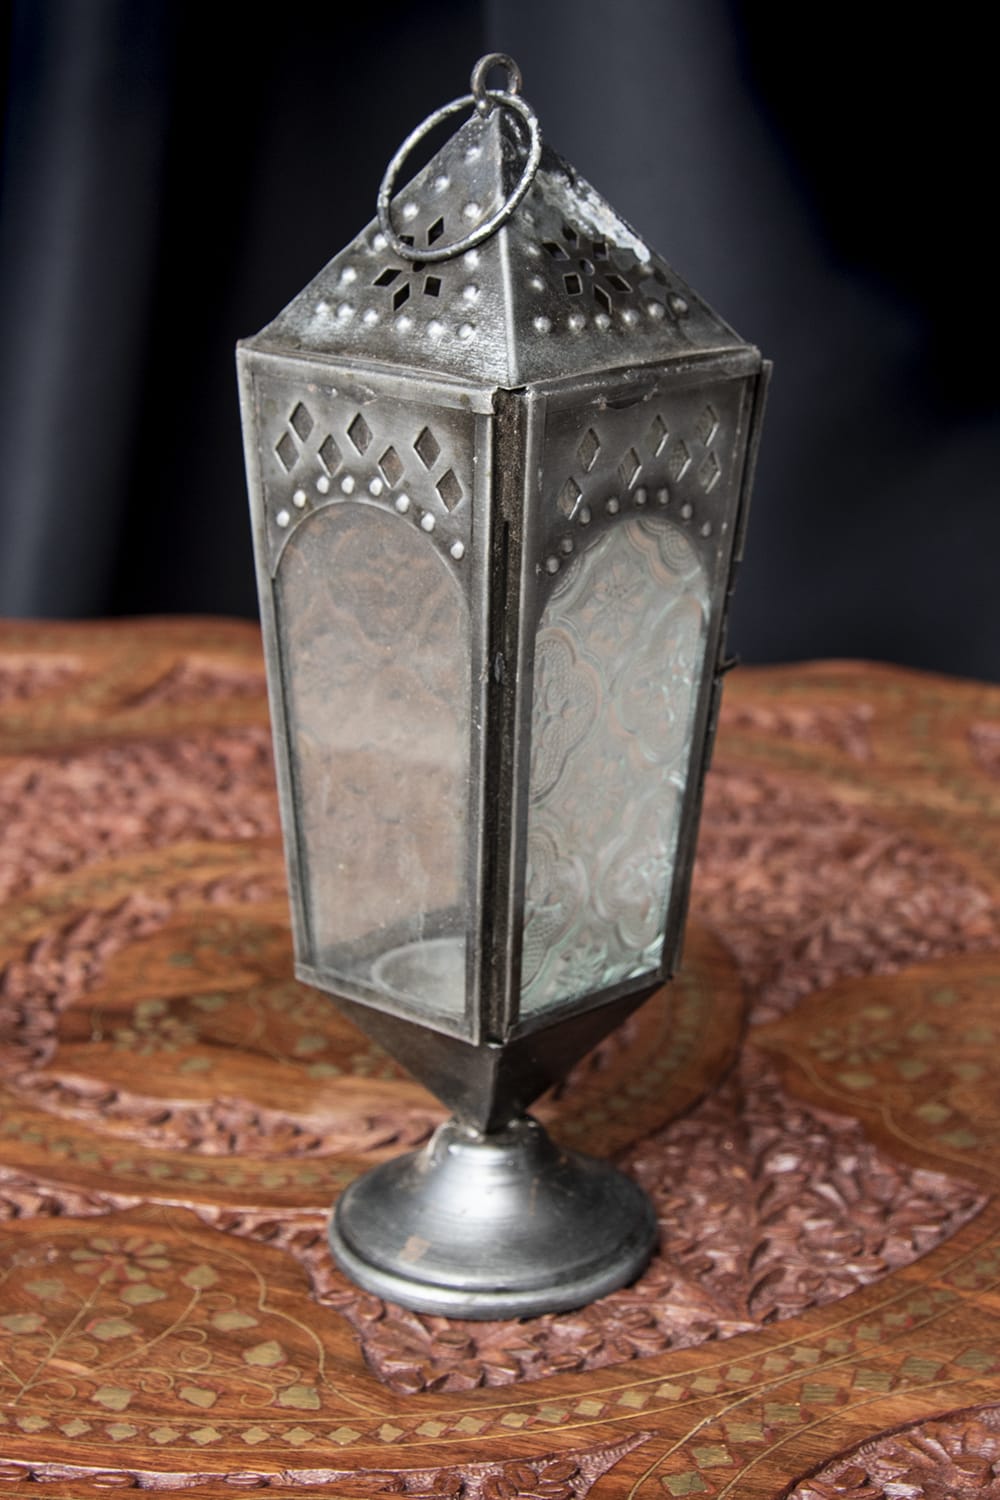 モロッコスタイルの透かし彫りLEDキャンドルランタン〔ロウソク風LEDキャンドル付き〕 - 〔ホワイト〕約24×8cmの個別写真